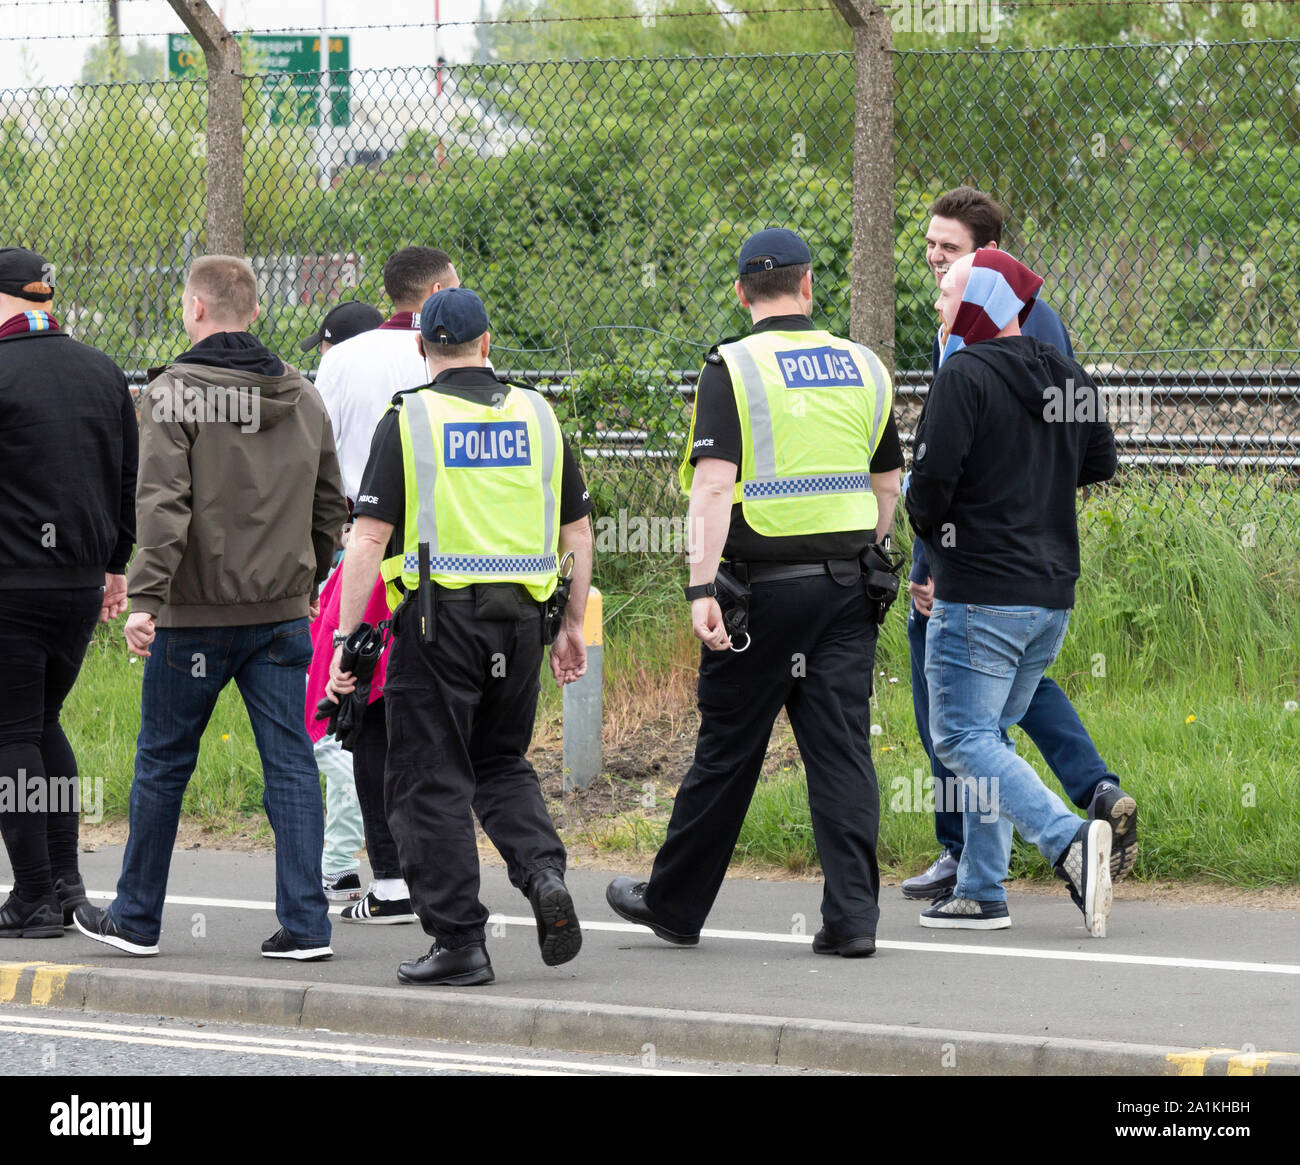 Polizia da Cleveland forza di polizia escort Aston Villa tifosi di Middlesbrough stadium per la partita di calcio. Foto Stock